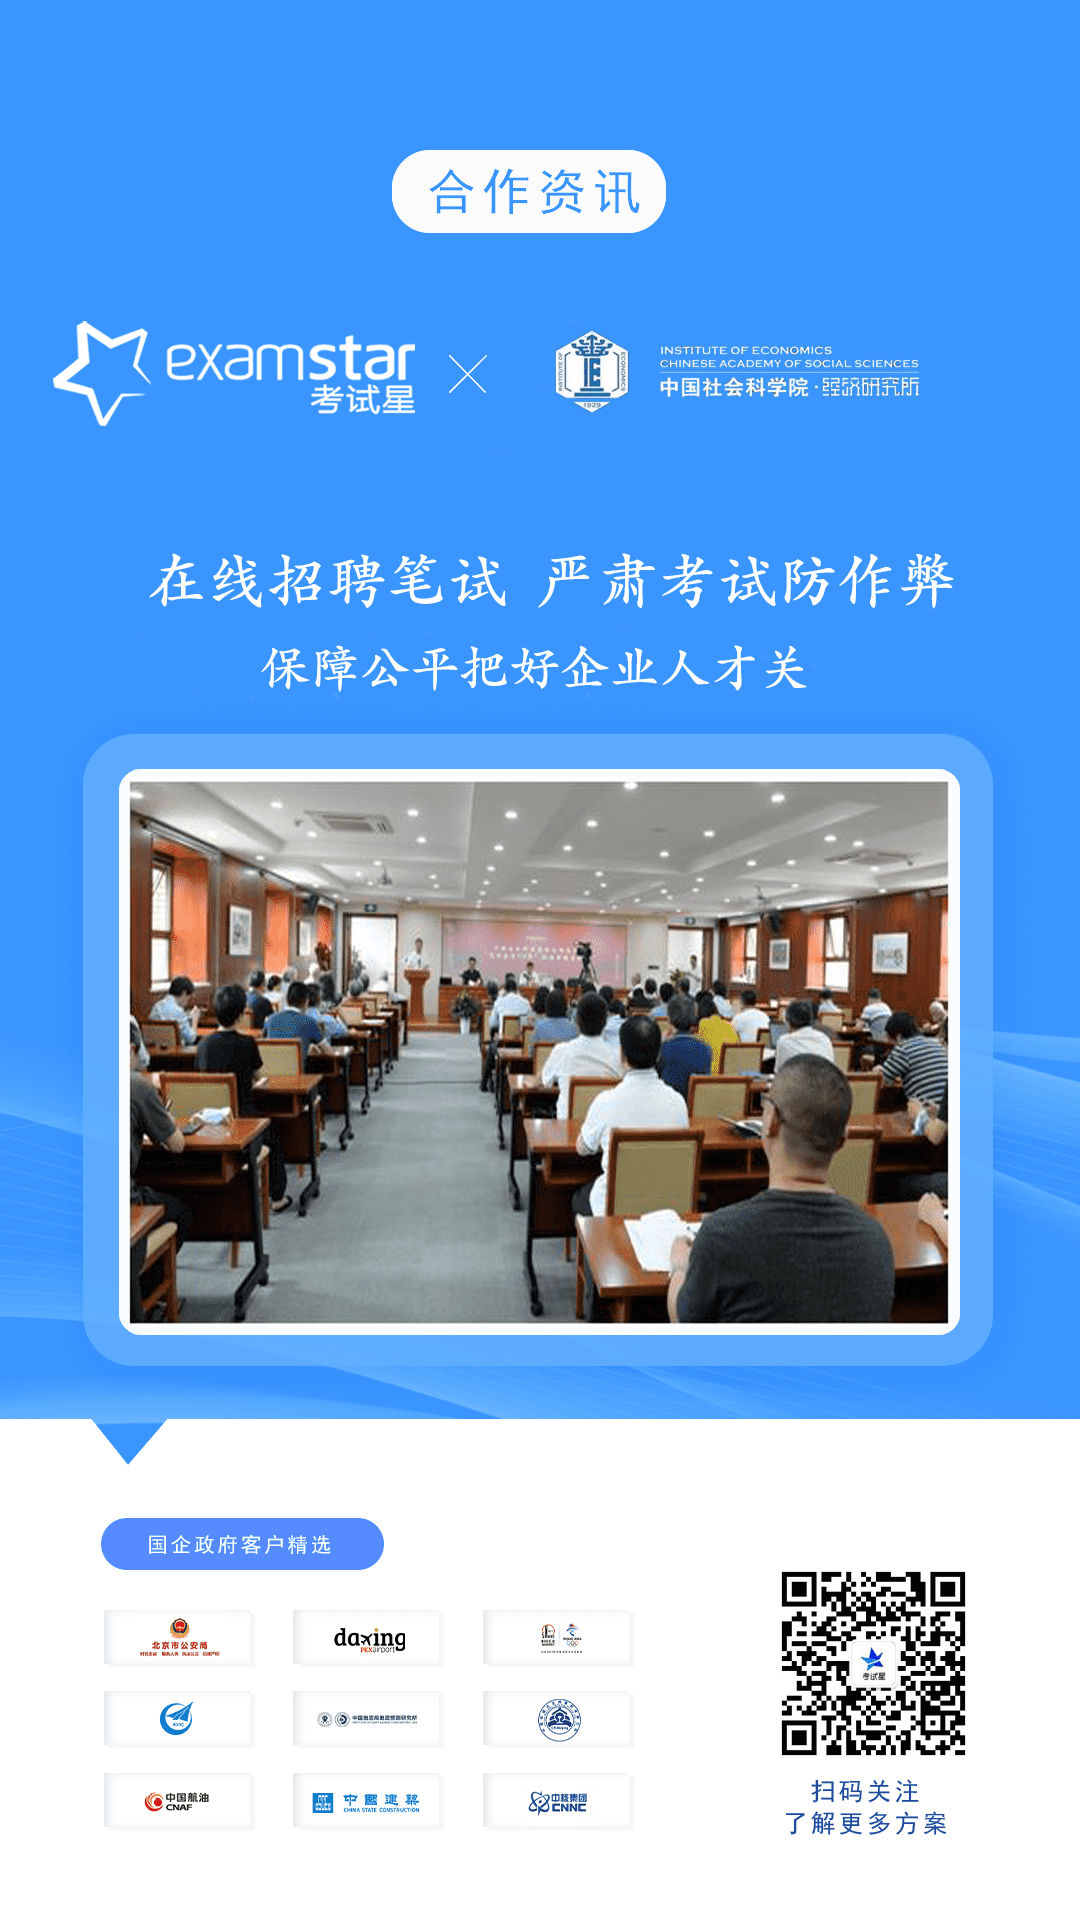 中国社会科学院经济研究所-考试星在线招聘笔试平台